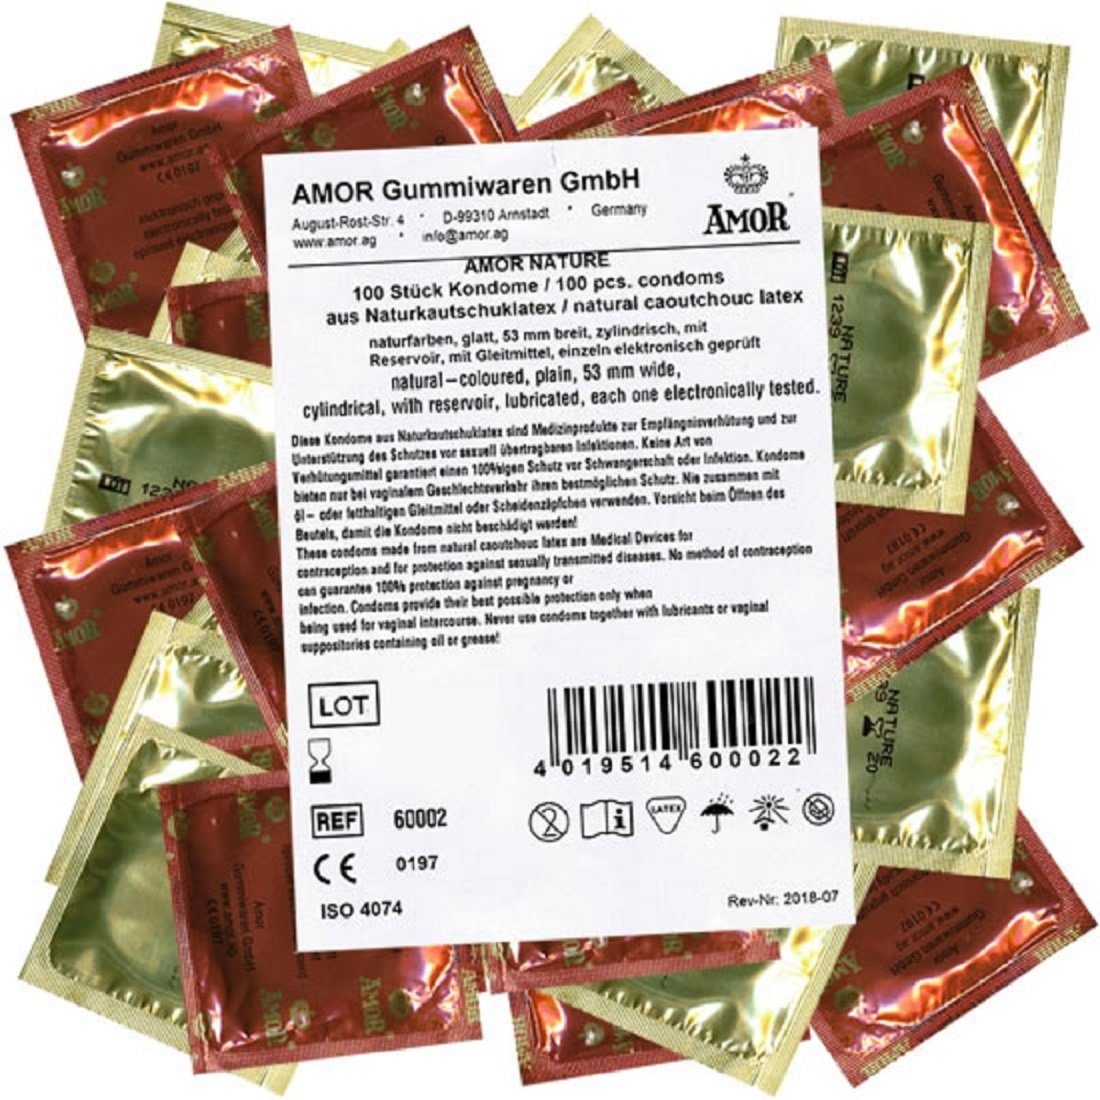 Amor Kondome Nature (einfache Kondome) 53mm nominale Breite, Packung mit, 100 St., natürliche Kondome, Maxipack für ein natürliches Gefühl und intime Sicherheit